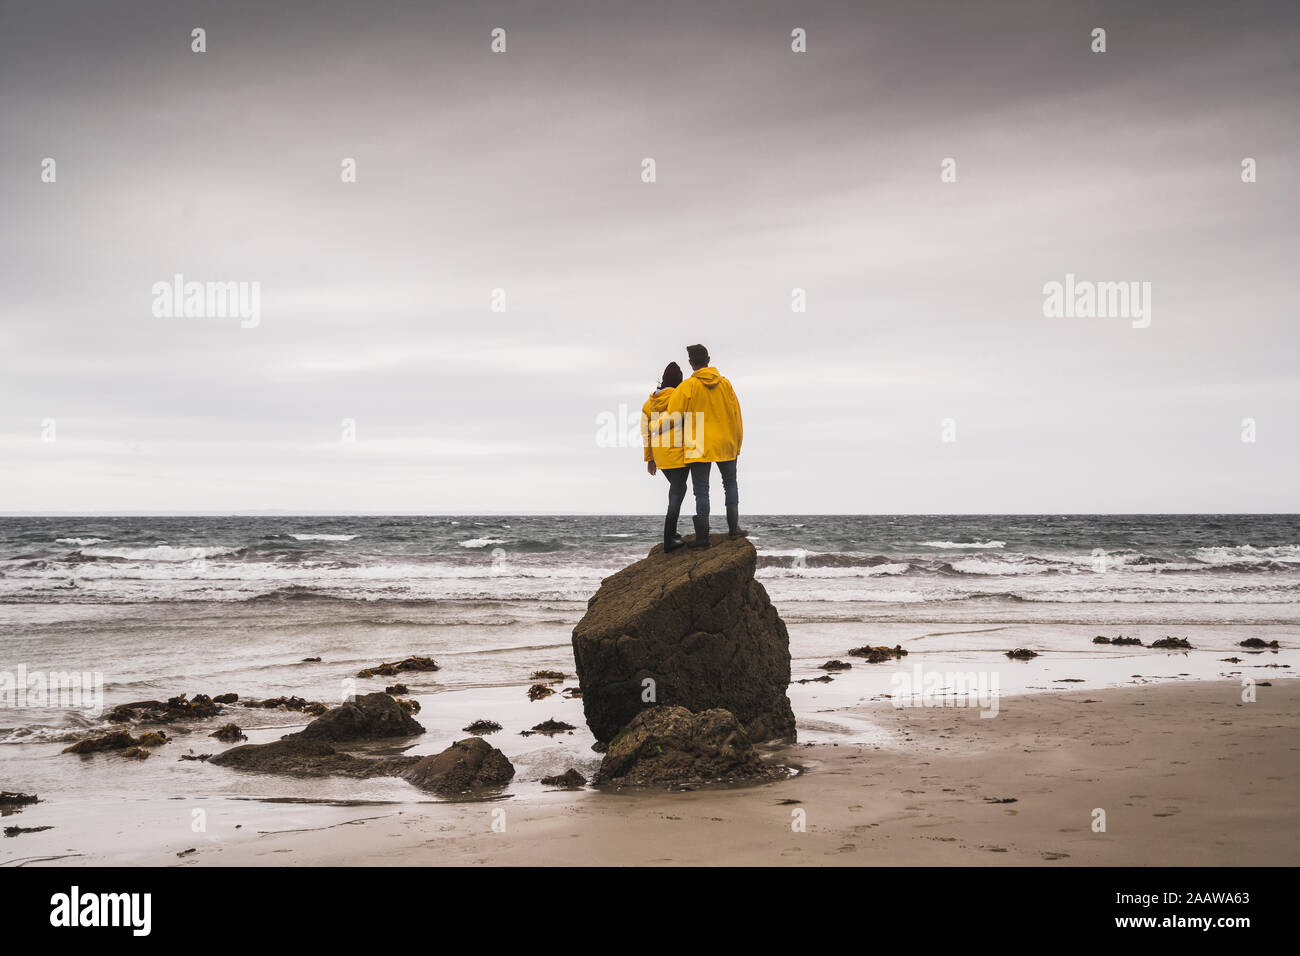 Jeune femme portant des vestes de pluie jaune et l'article sur rock à la plage, Bretagne, France Banque D'Images